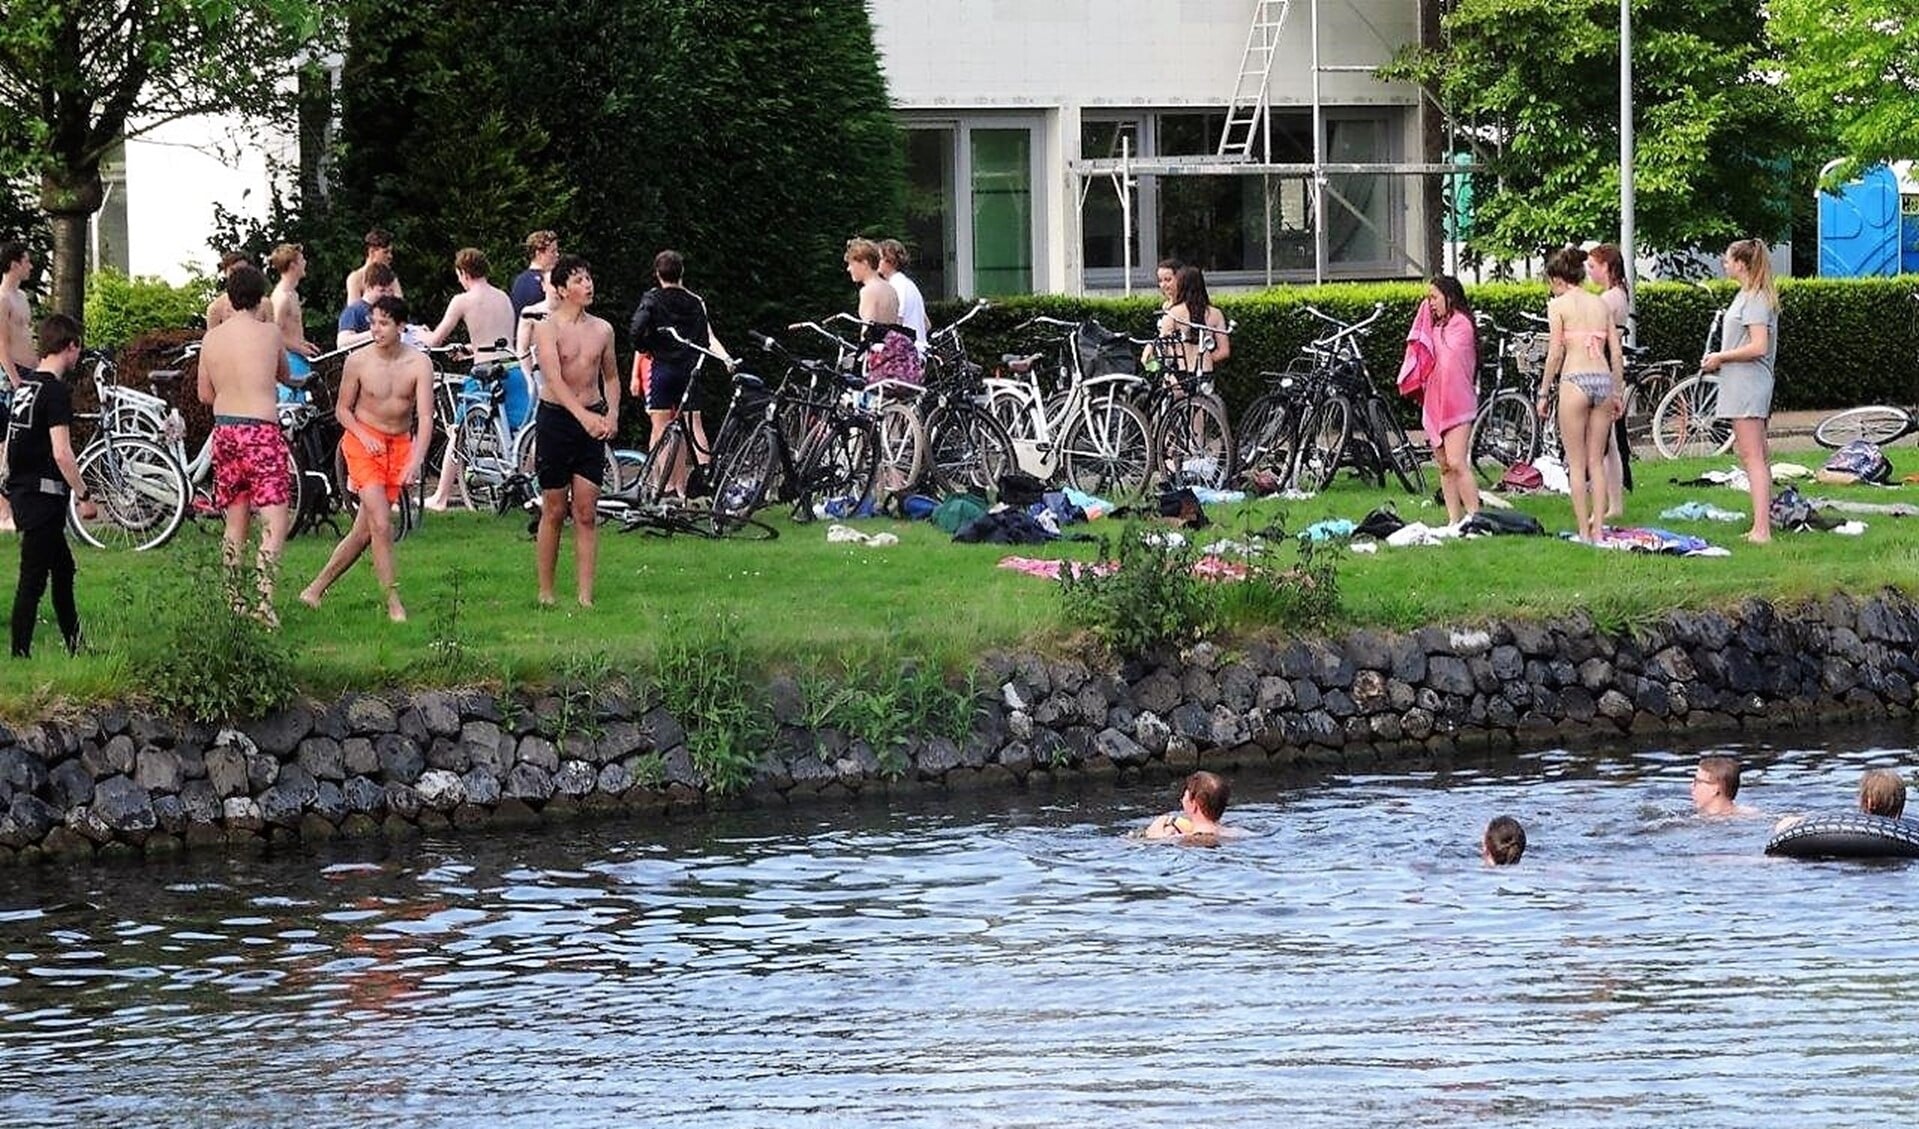 Zwemmen in de Vliet is niet overal toegestaan (archieffoto: Ap de Heus).